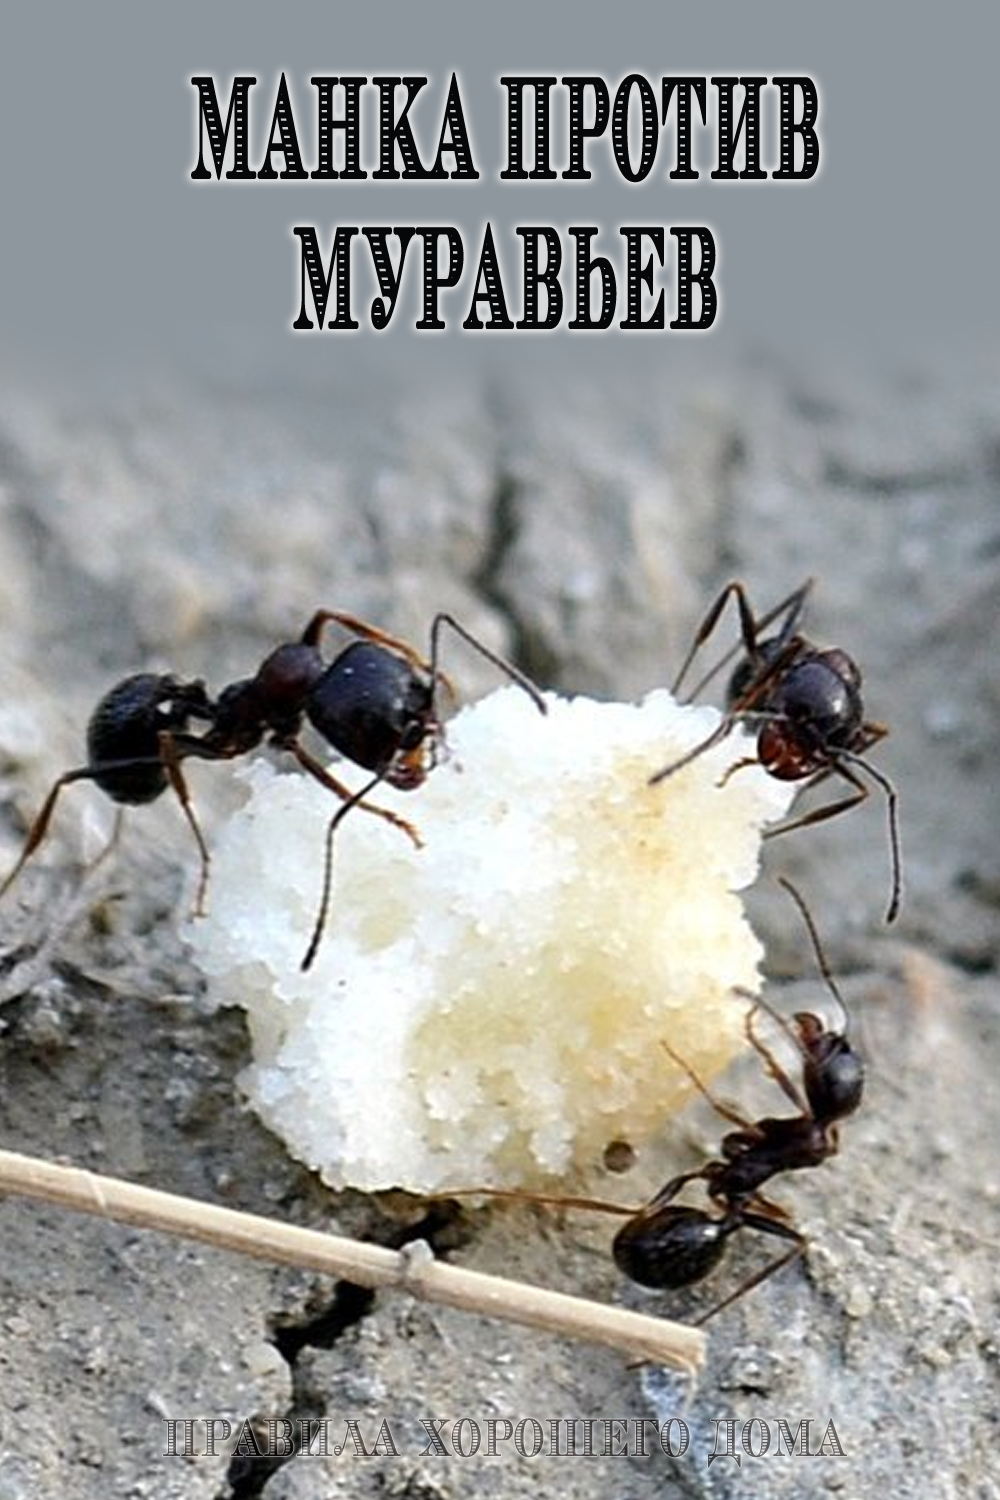 Как избавиться от муравьев на даче при помощи народных средств и ядохимикатов